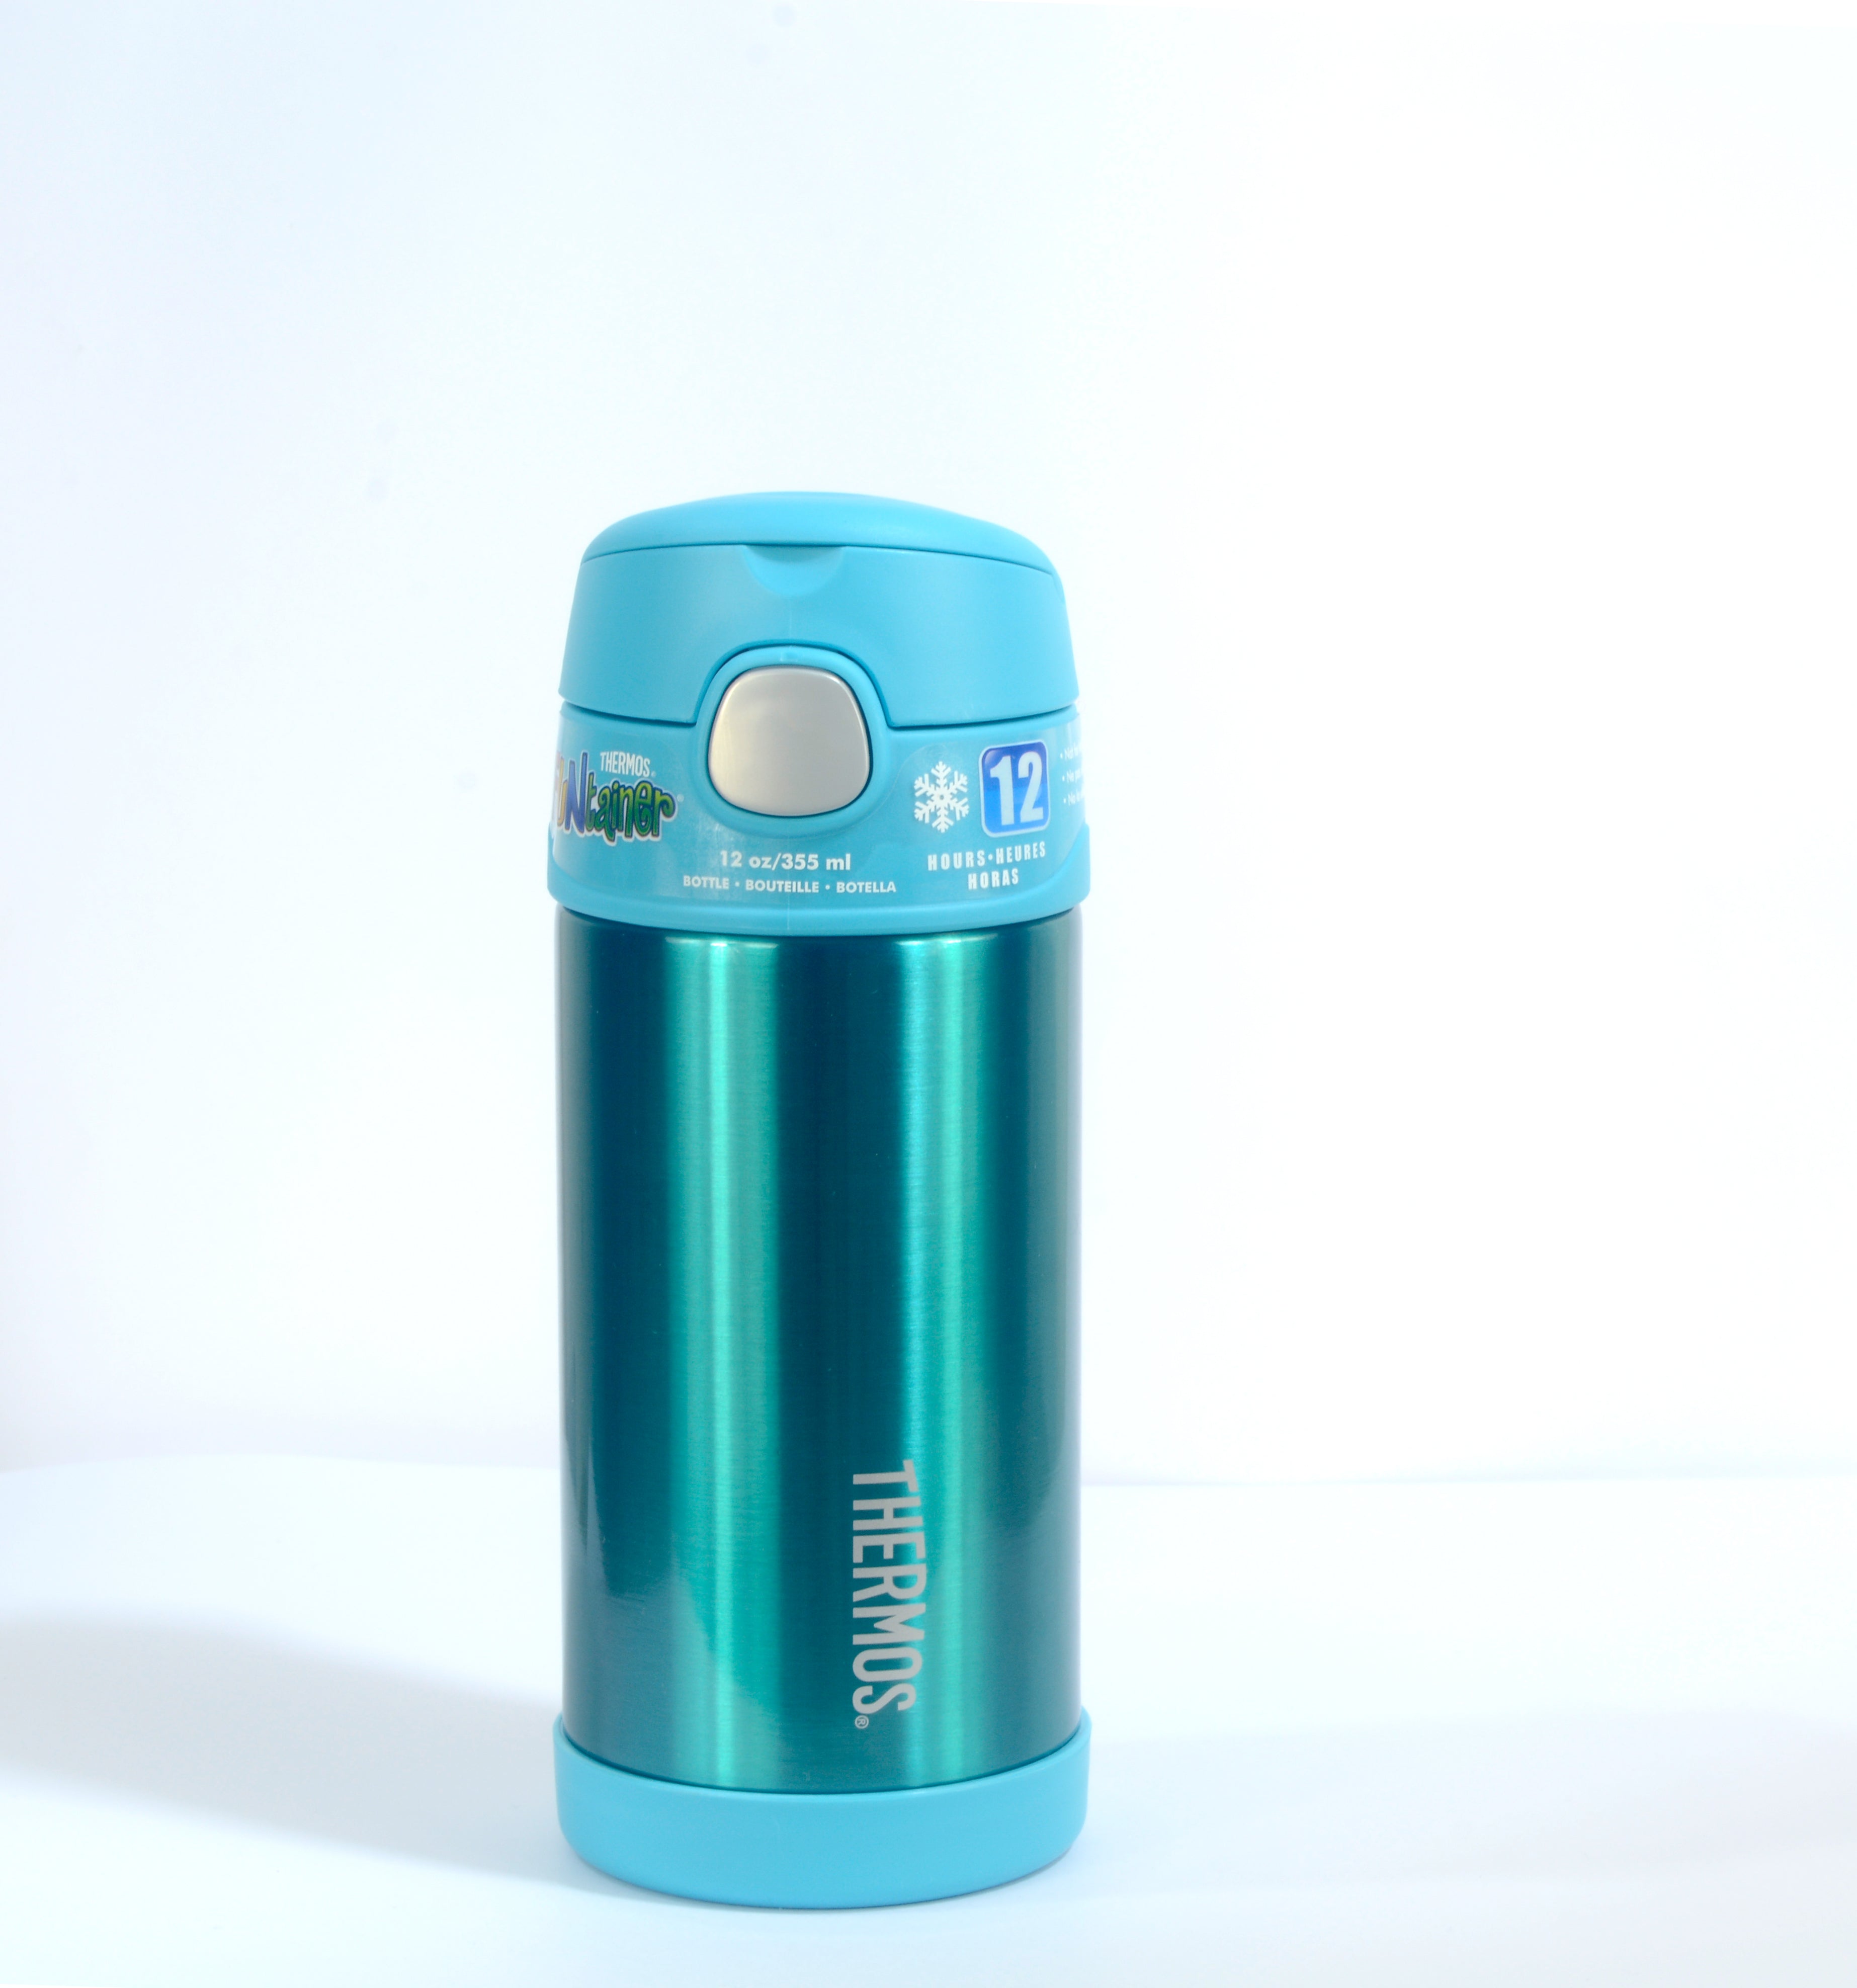 زجاجة ماء/ترمس للترطيب من الفولاذ المقاوم للصدأ من فانتينر - أزرق مخضر 355 مل